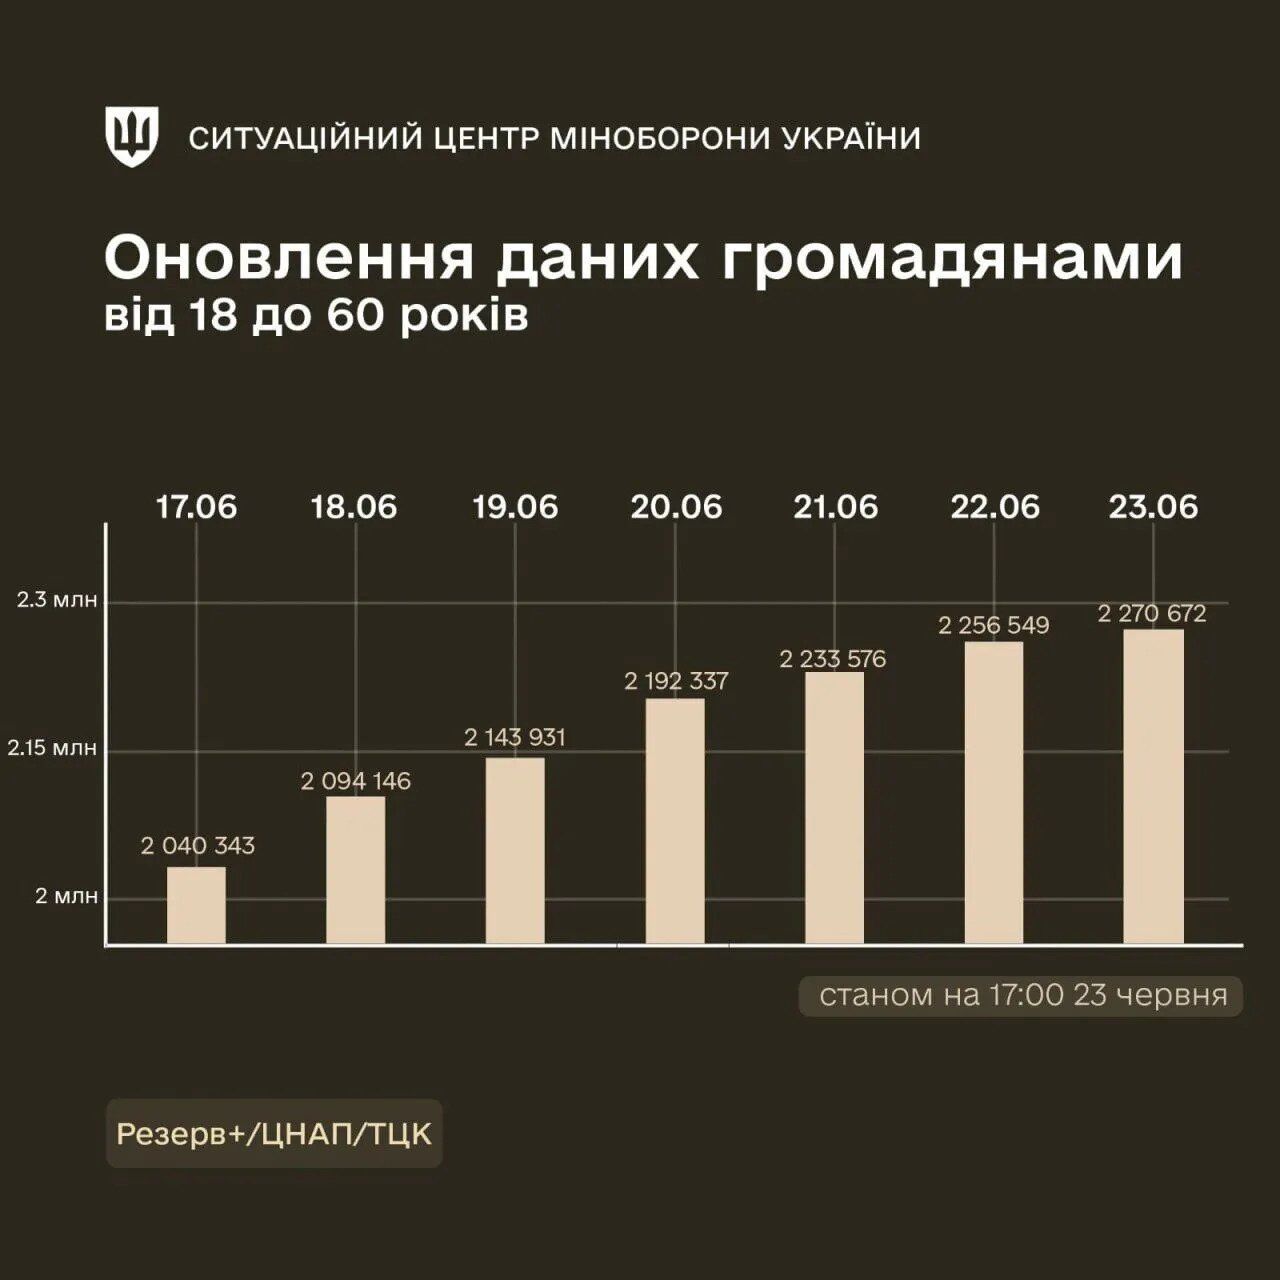 Понад мільйон – придатні до служби: в Міноборони розповіли, скільки українців оновили дані через "Резерв+"